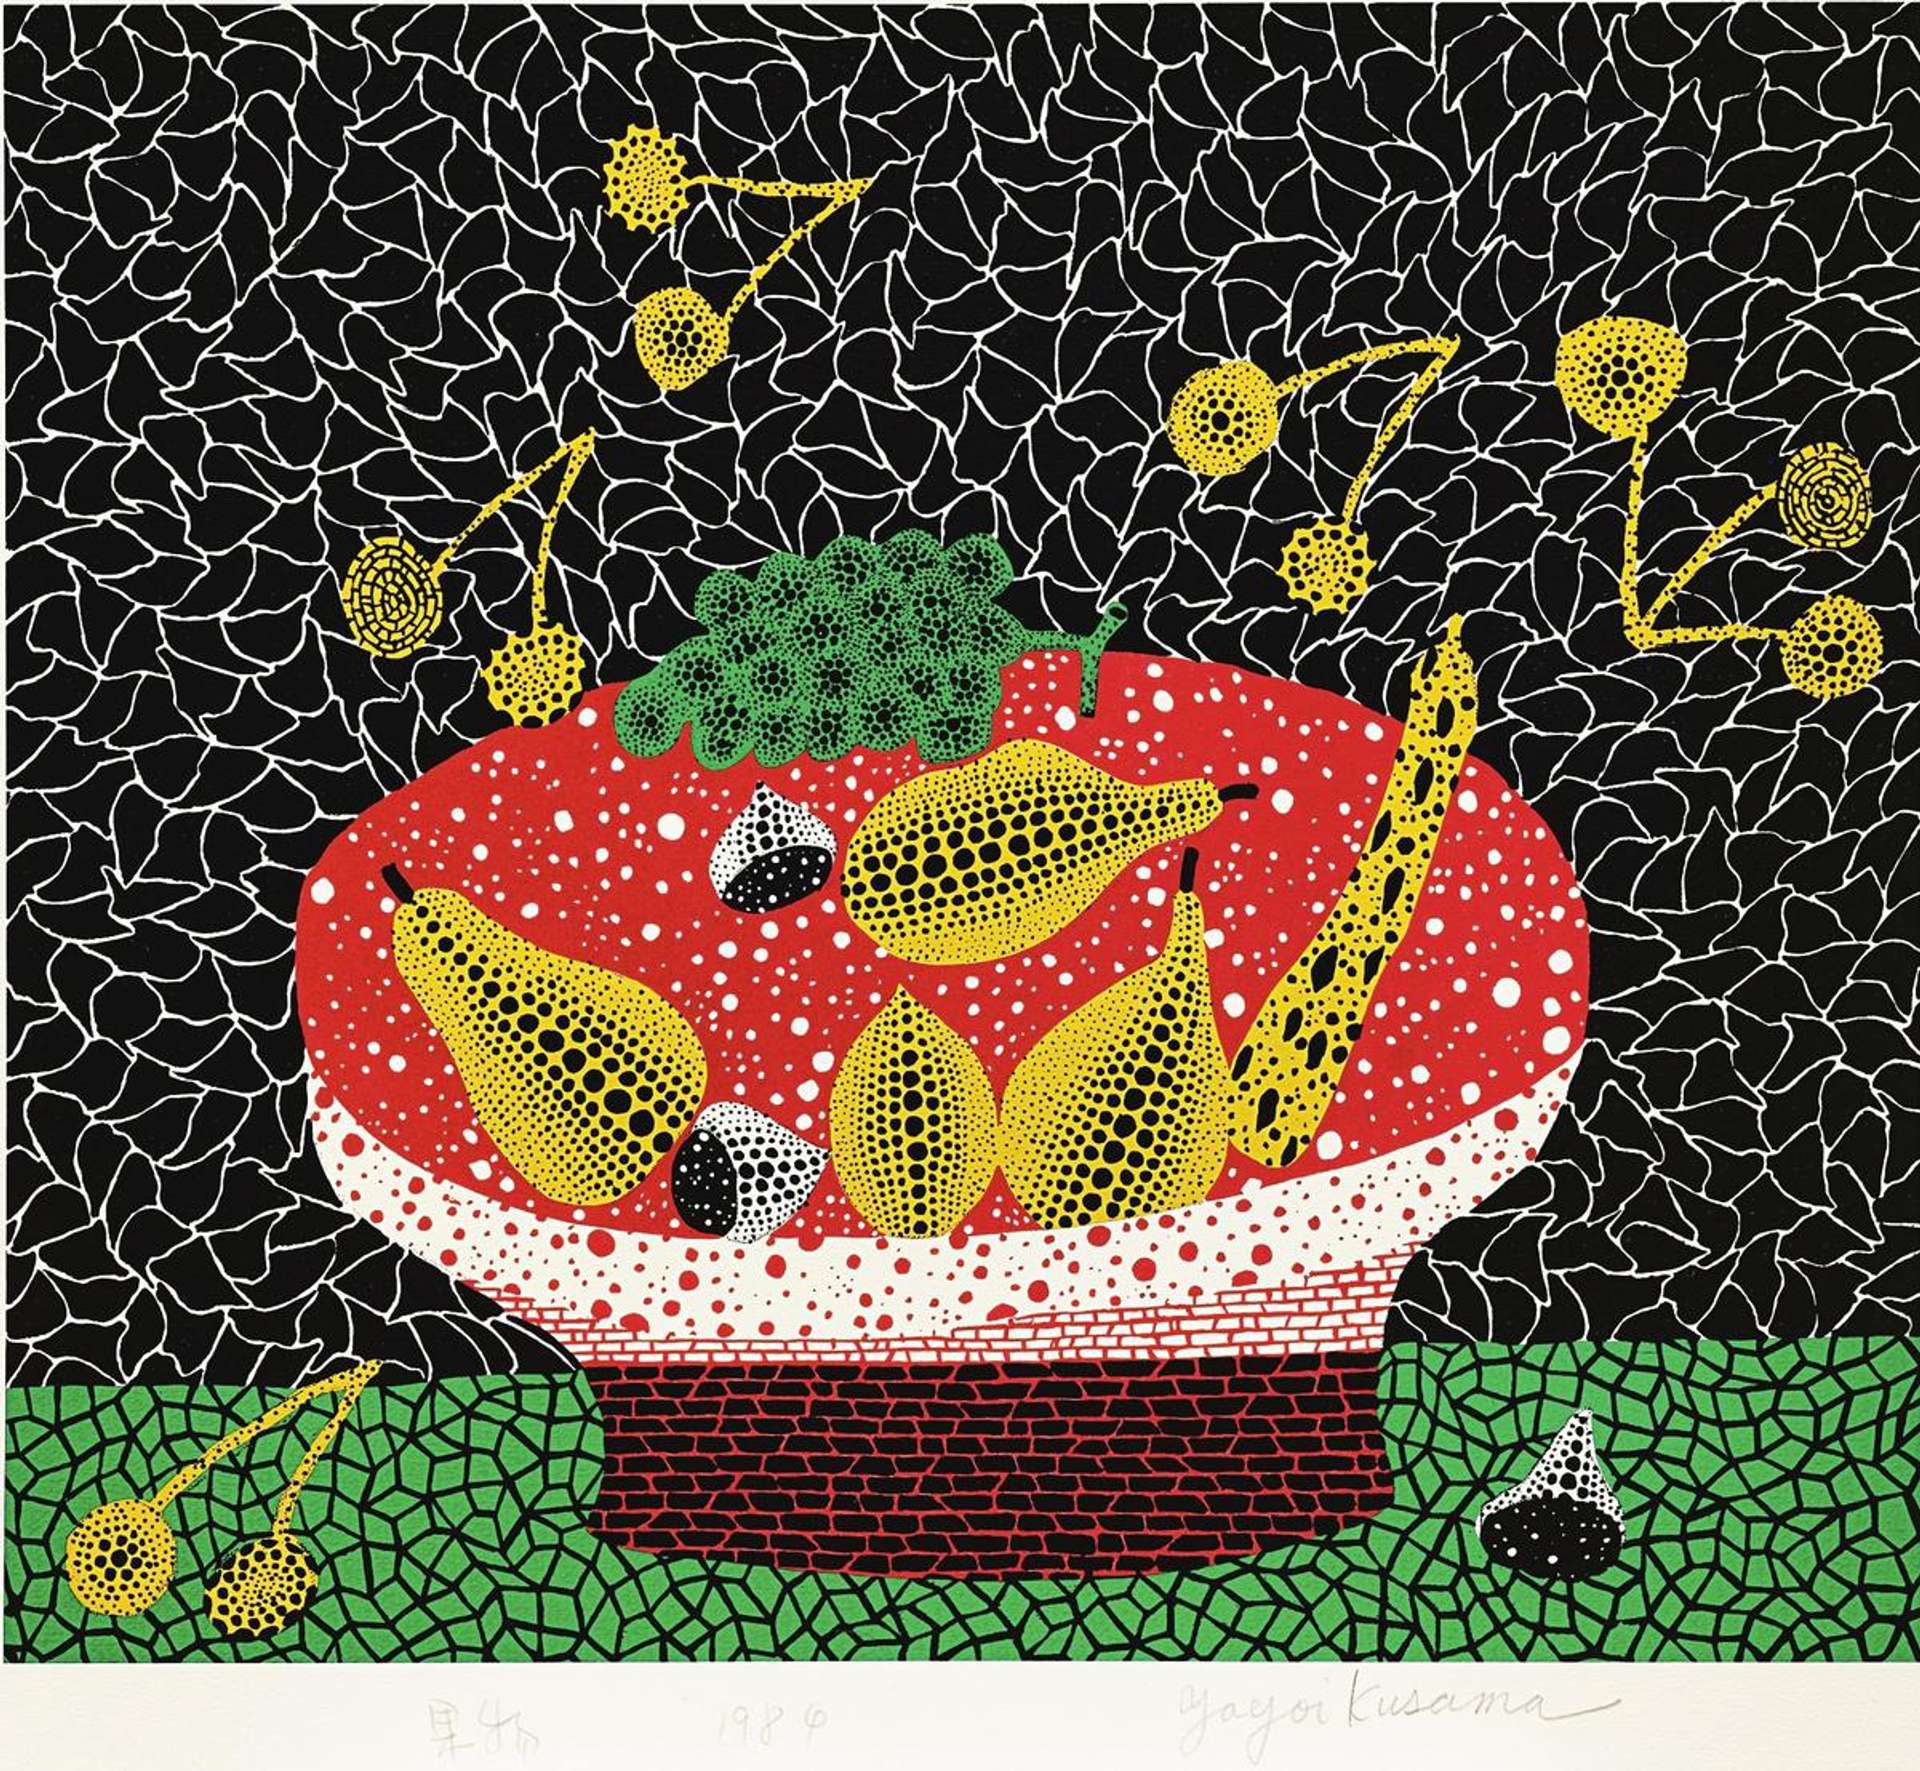 Yayoi Kusama: Fruits - Signed Print